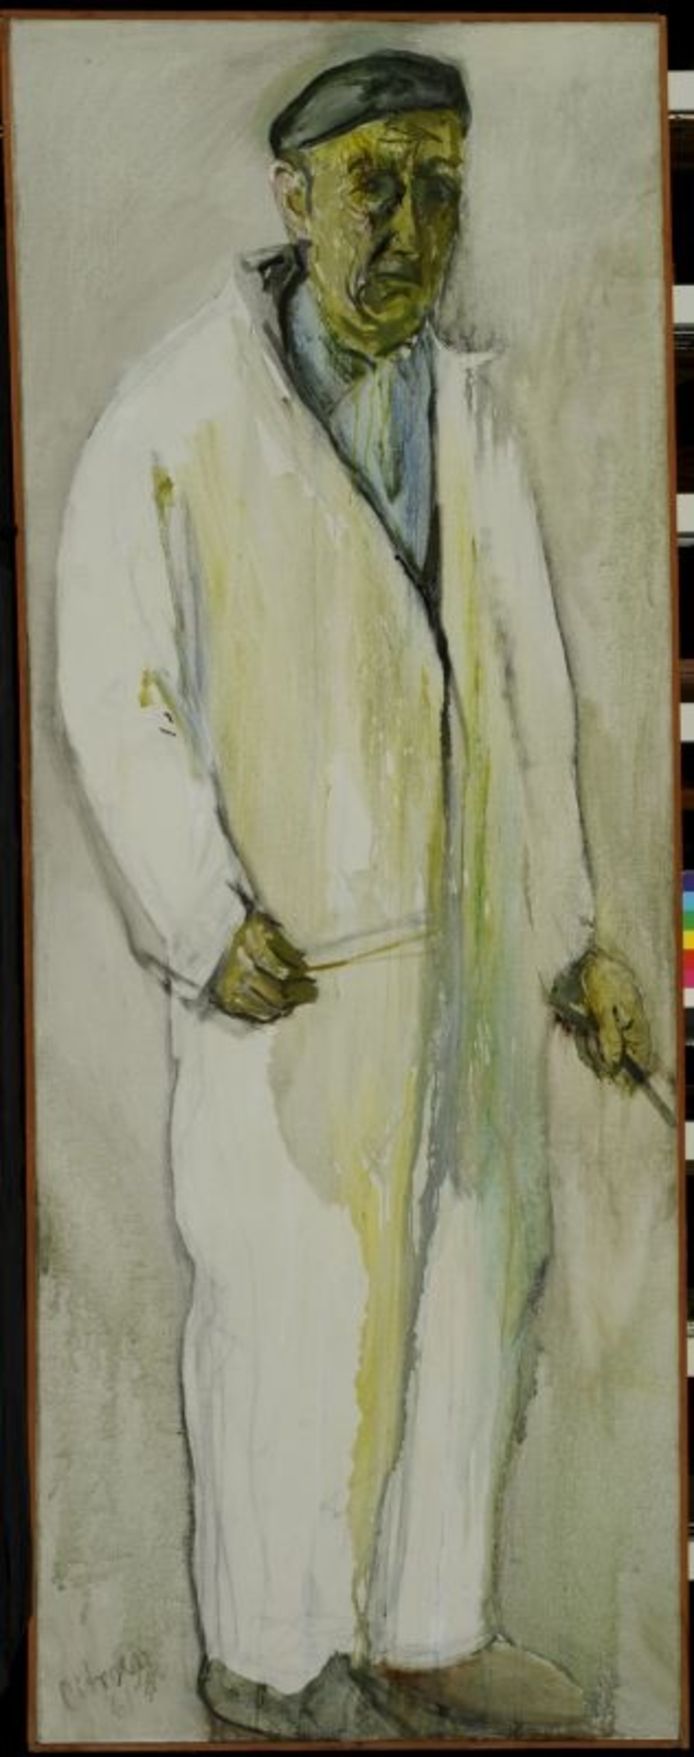 Zelfportret Paul Citroen 1961, olieverf op doek.